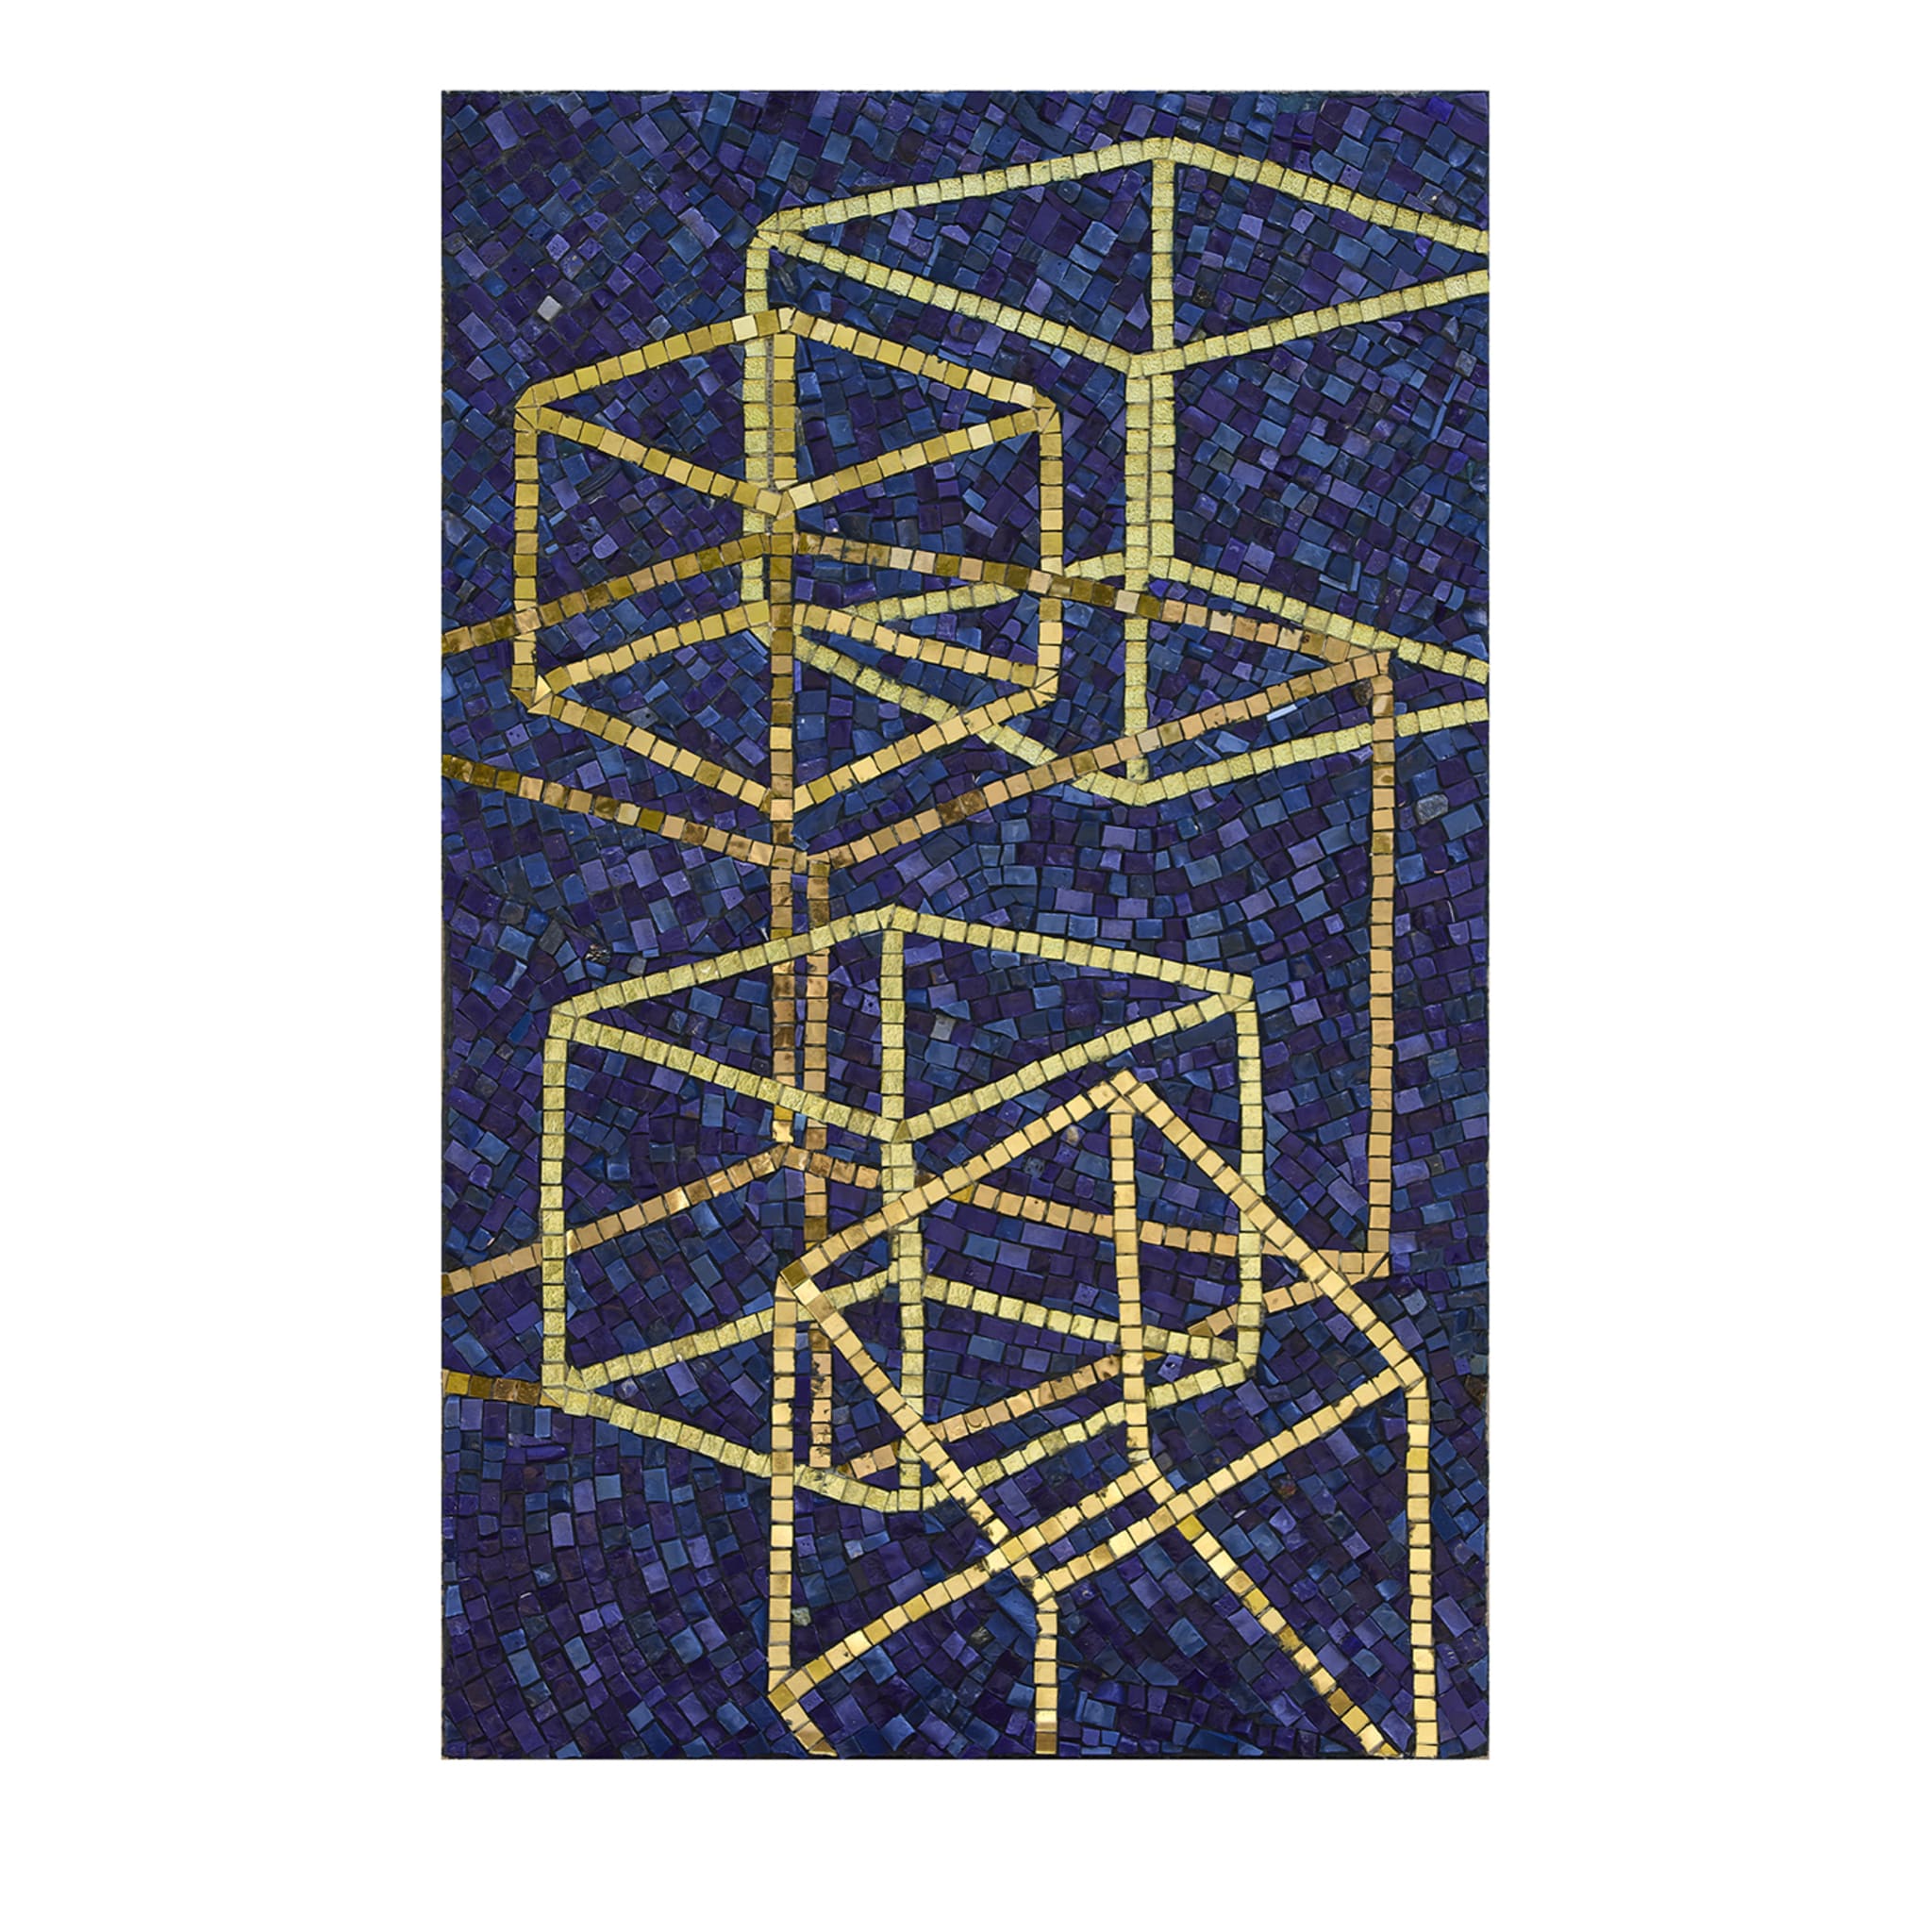 Solidi Platonici 1 Blue & Gold Mosaic Panel - Main view